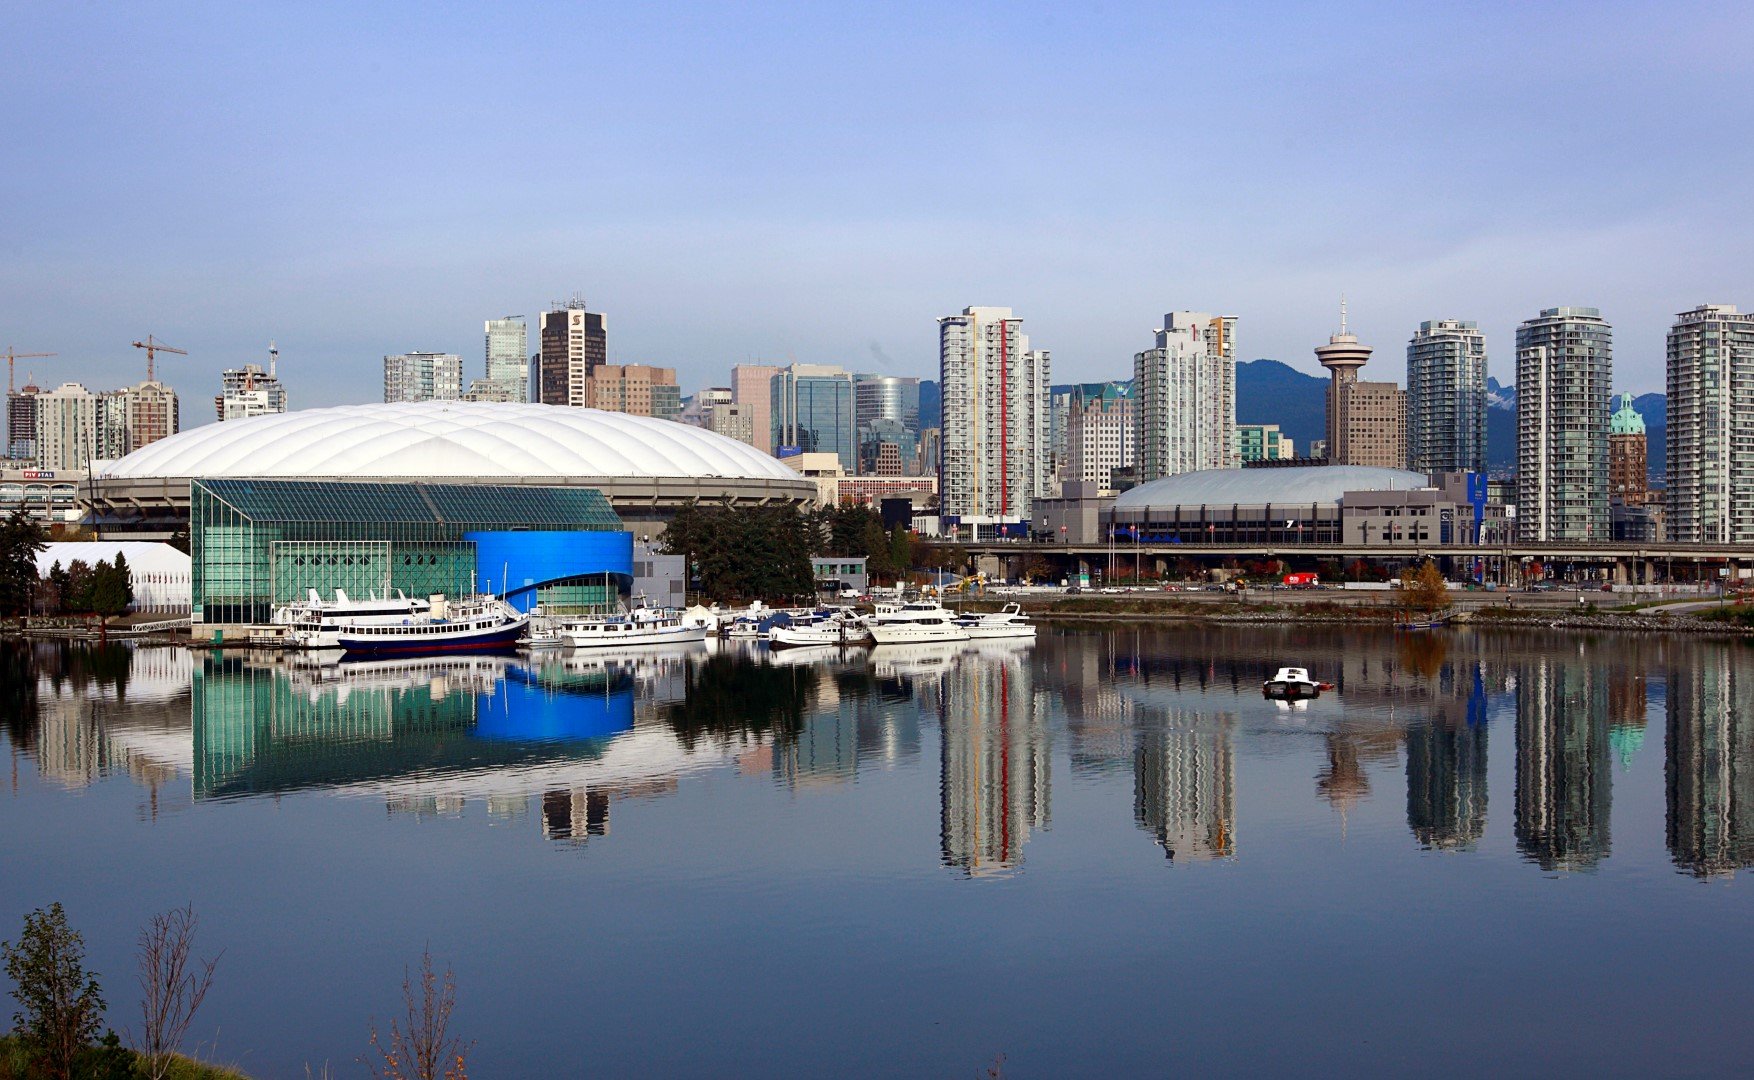 "BC Place" (Ванкувър, Канада) - по време на Мондиала ще се казва стадион "Фолс Крийк", от местността край Ванкувър, където се намира. С капацитет от 55 000 места това е най-големият стадион в страната за футбол.